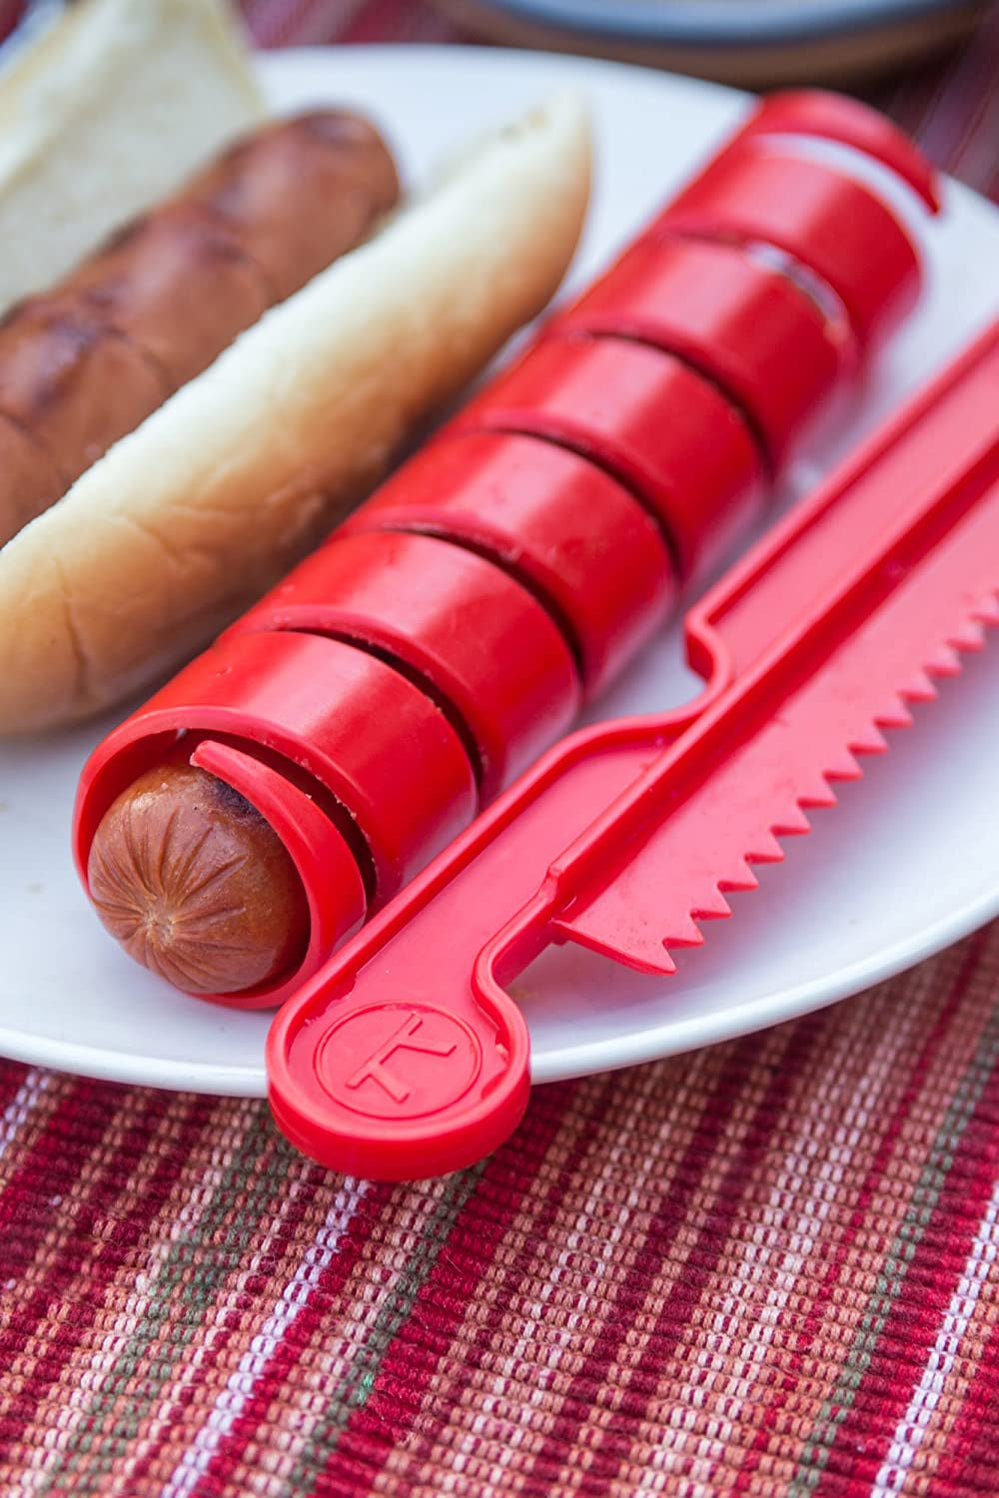 hot dog slicer